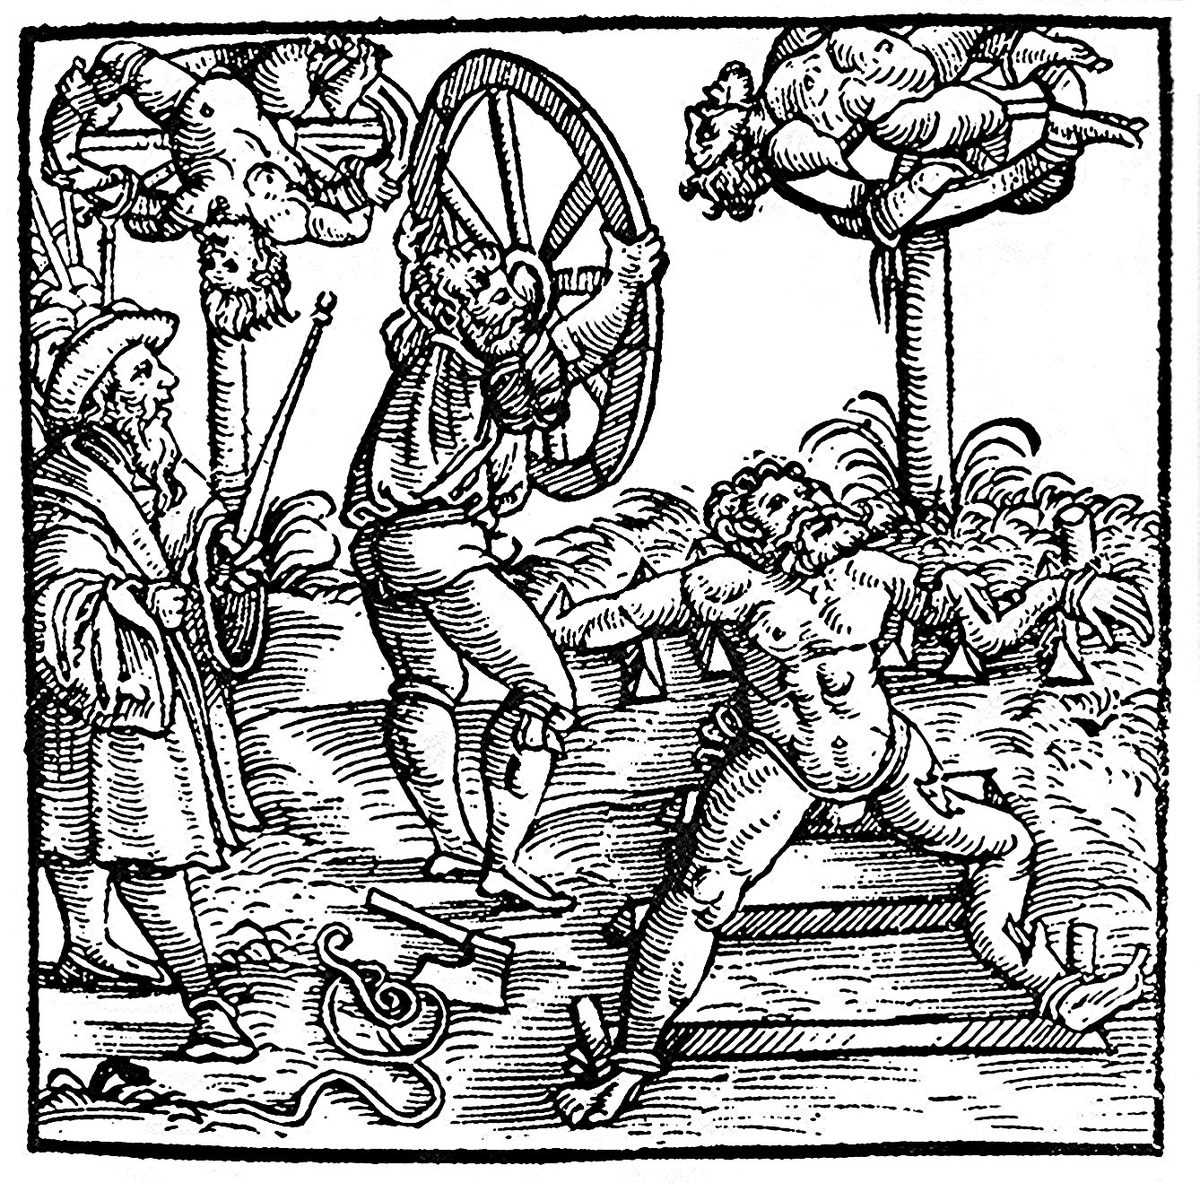 車裂き刑(車輪刑)は、受刑者の手足を粉砕して車輪に括り付けて晒すという、中世ヨーロッパのユニークな刑罰。太陽信仰と関係があるとも。 